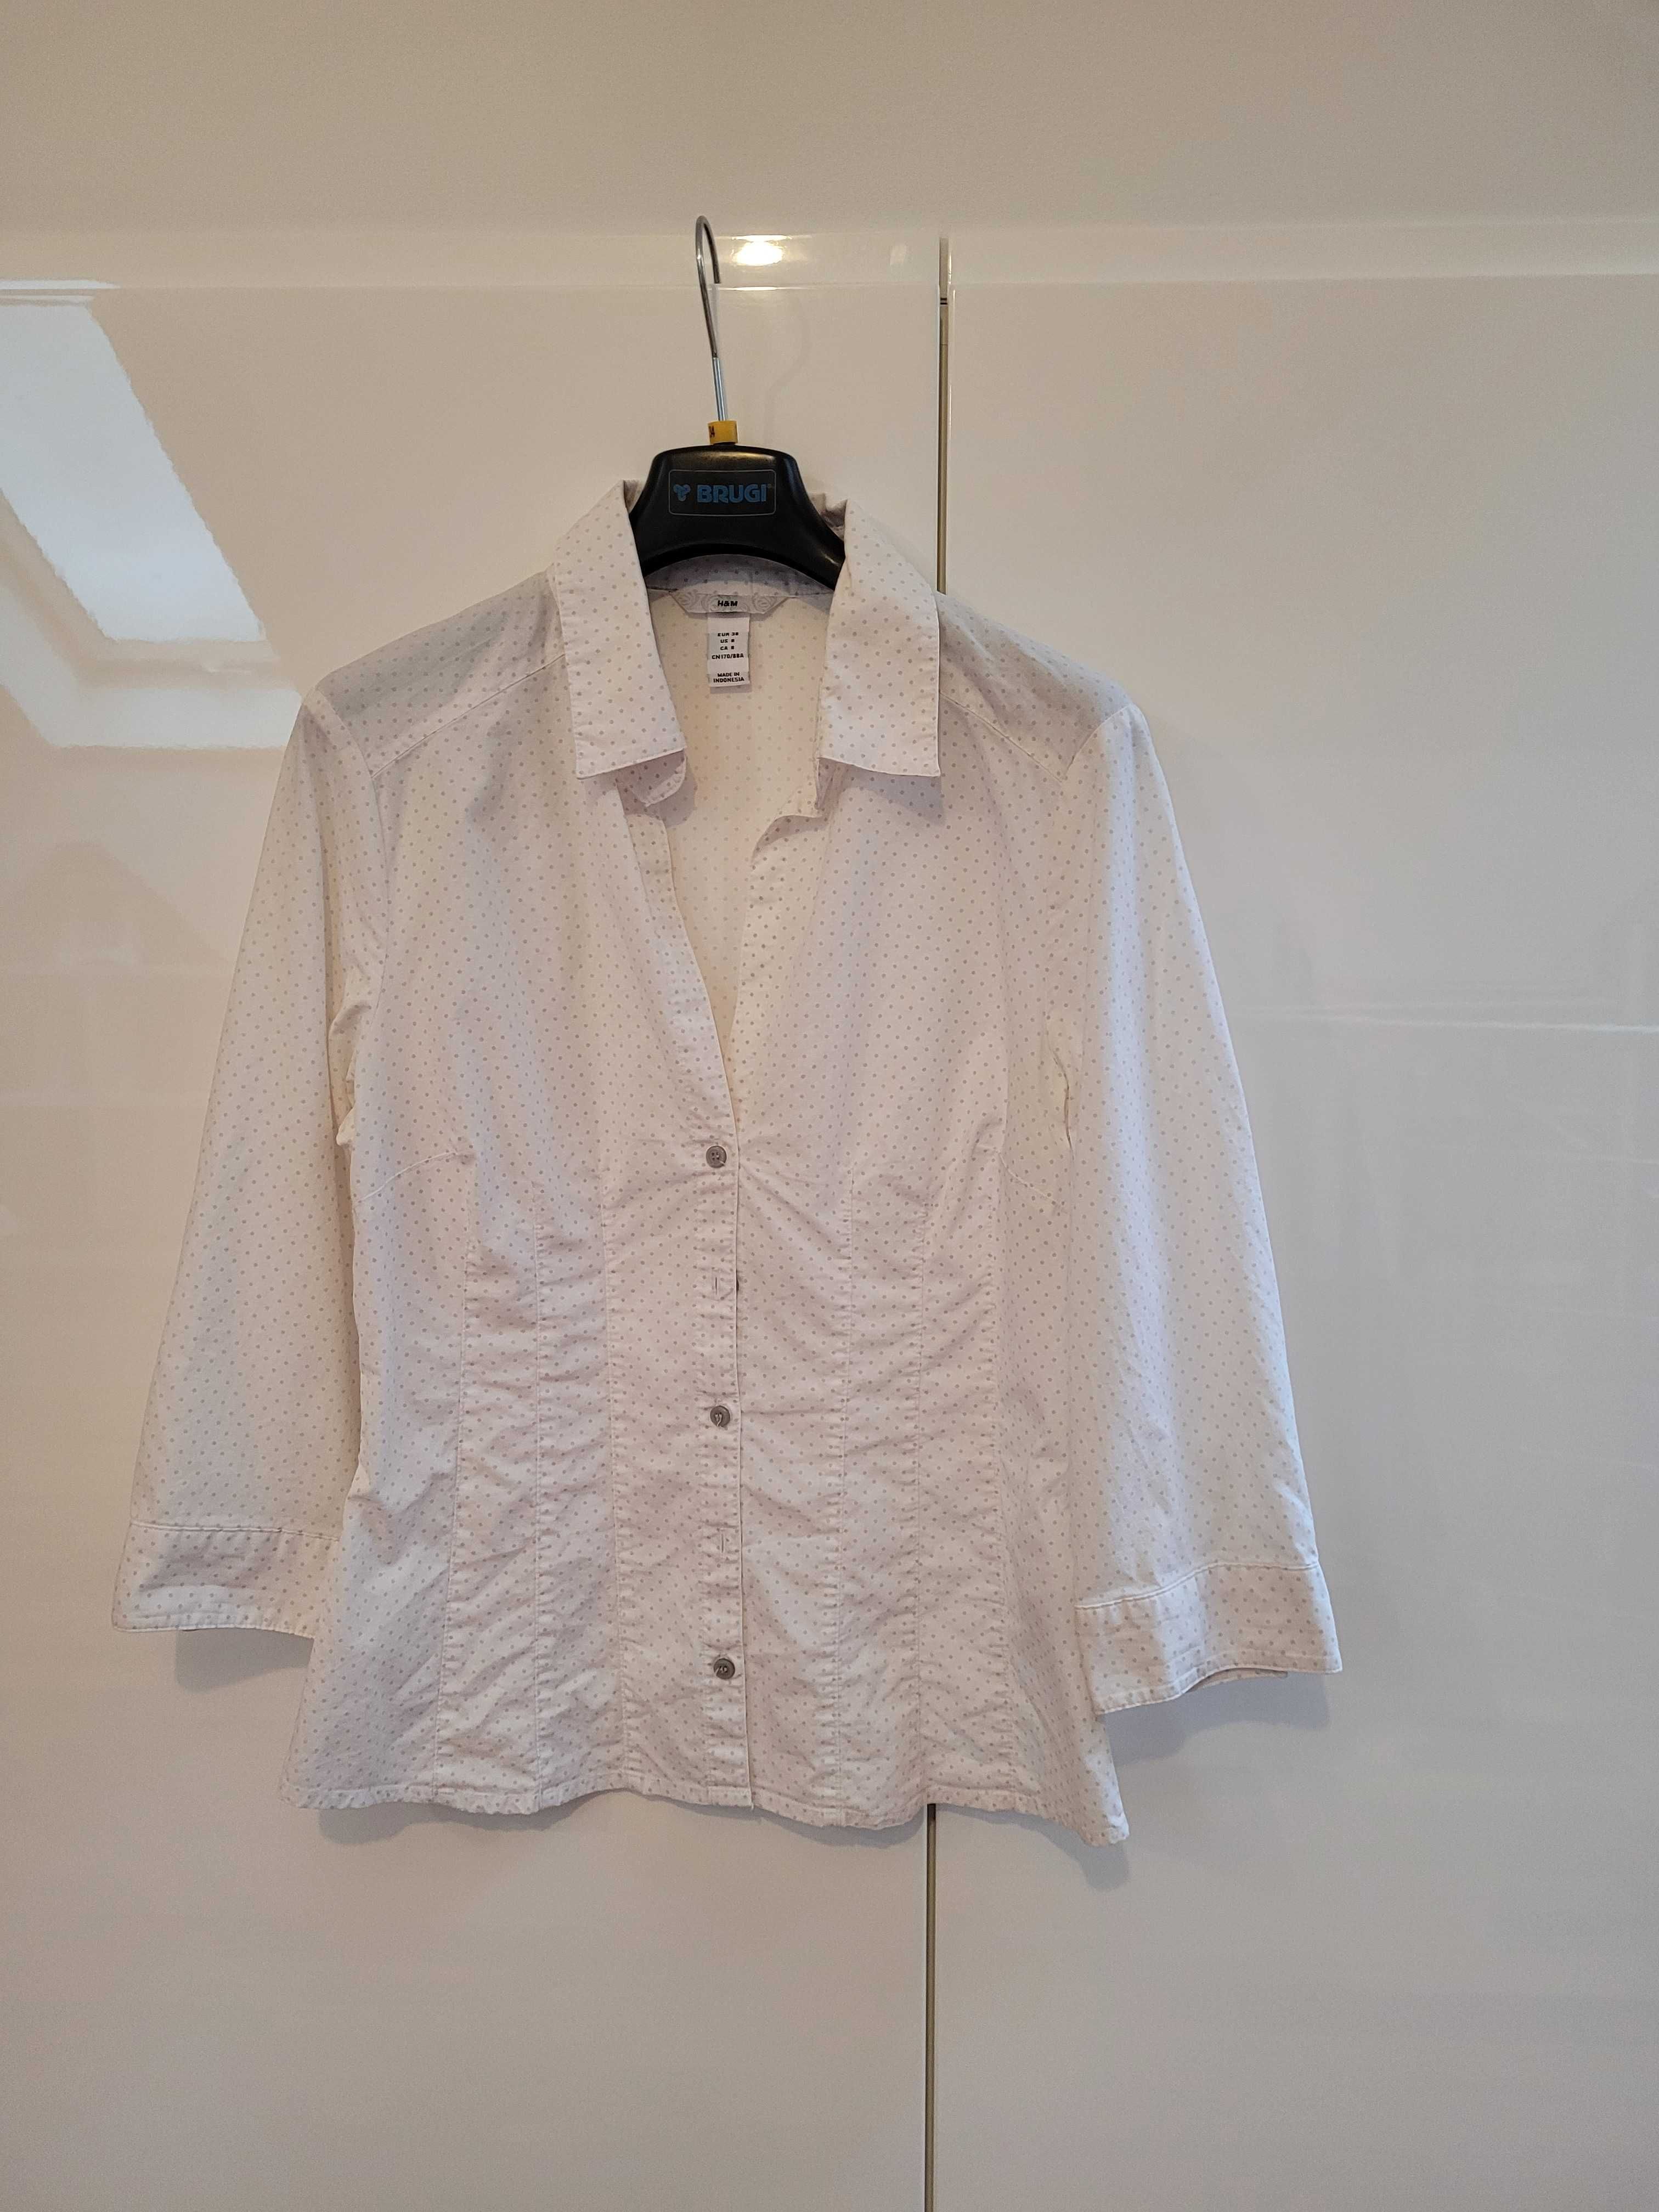 Koszula H&M 38 M bluzka biała koszula